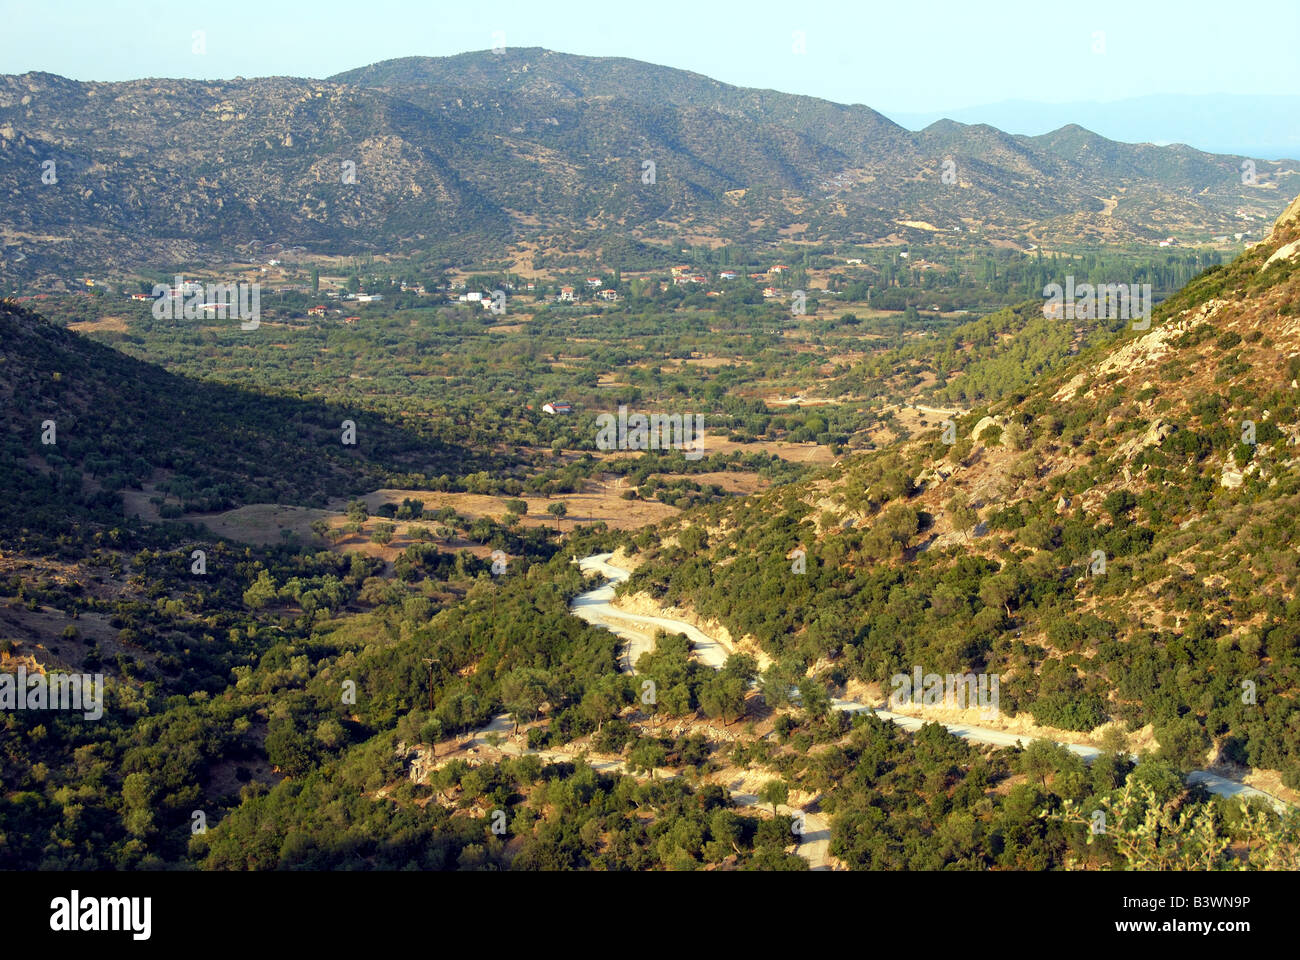 Road through mountainous interior, near Sikia, Sithonia Peninsula, Chalkidiki, Central Macedonia, Greece Stock Photo